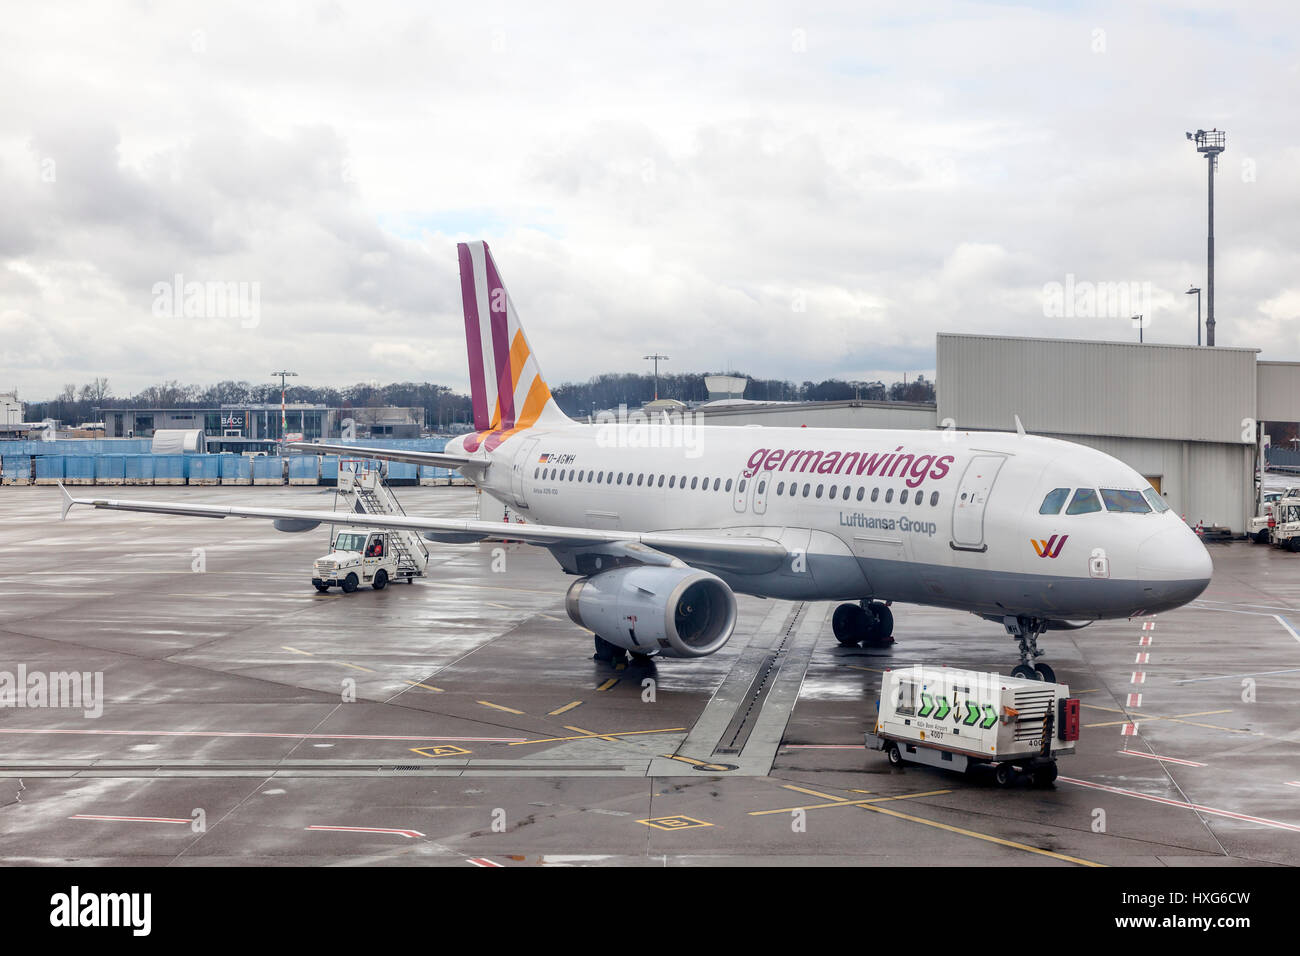 COLOGNE, ALLEMAGNE - 9 mars 2017 : Airbus A319-100 GermanWings à l'aéroport de Cologne, Allemagne Banque D'Images